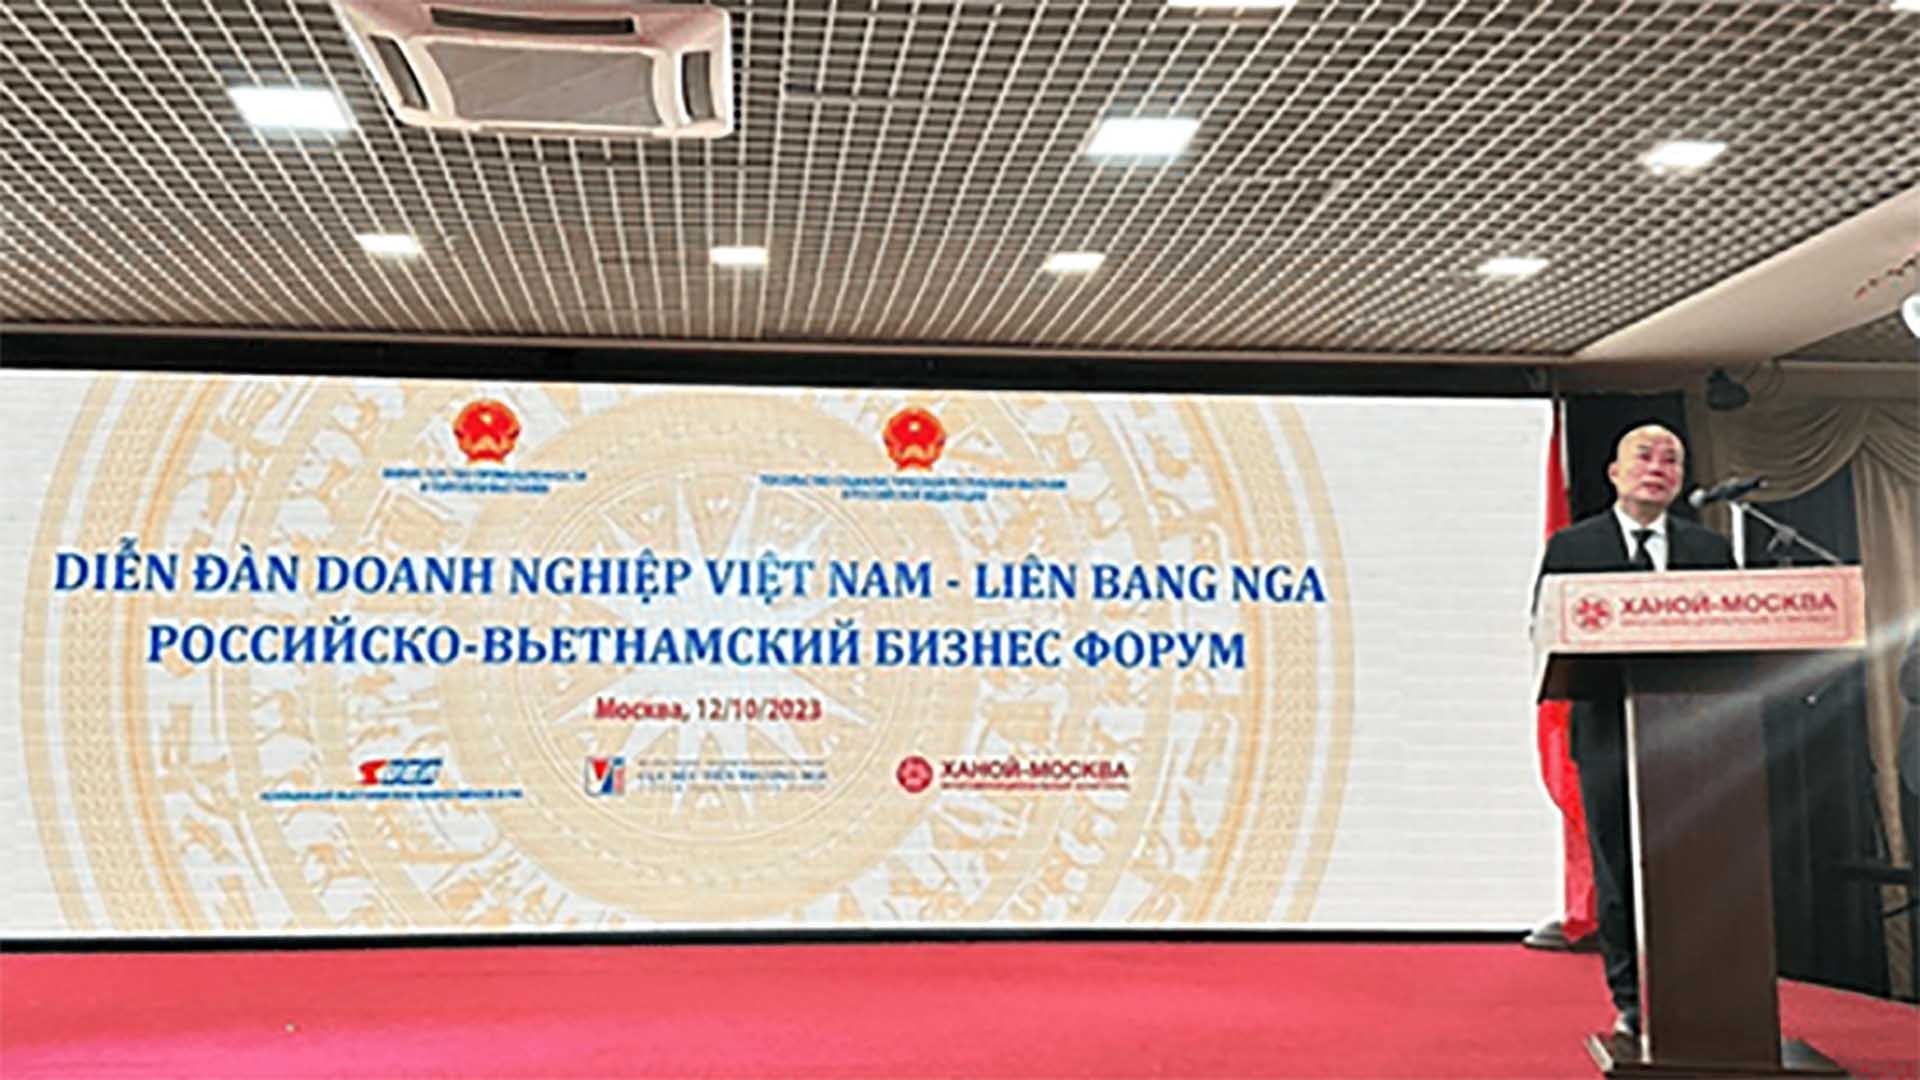 Cục trưởng Cục xúc tiến thương mại Vũ Bá Phú phát biểu tại Diễn đàn doanh nghiệp Việt Nam-Liên bang Nga.